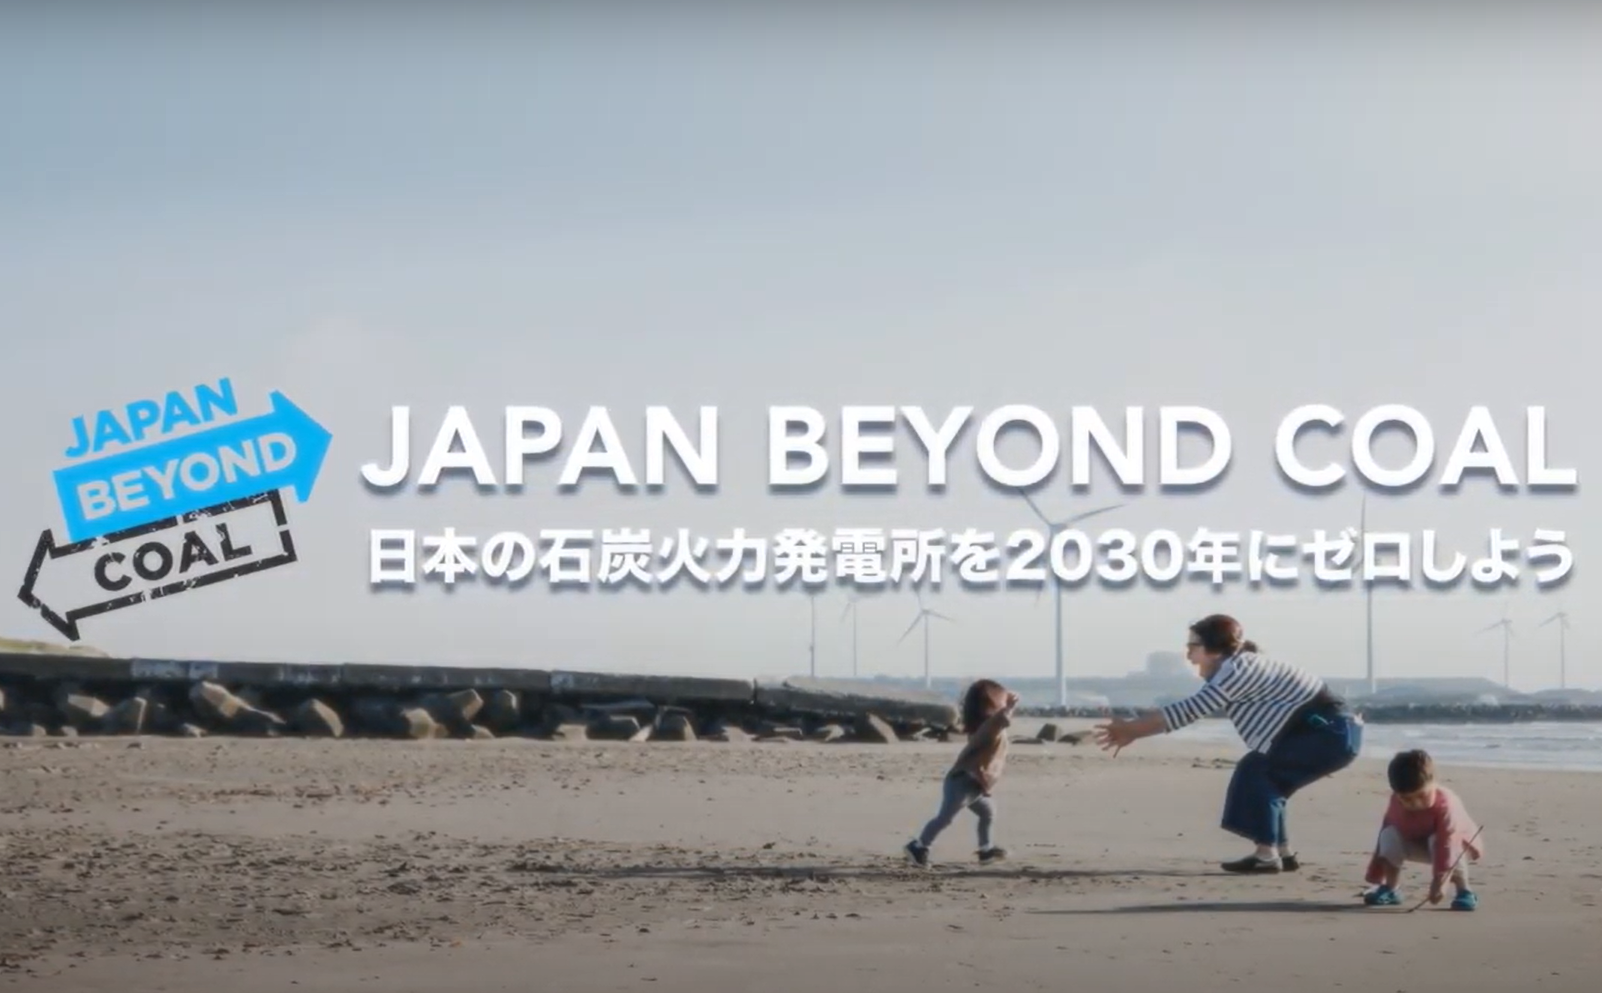 【ニュース】Japan Beyond Coal (JBC) の発足から1年。9月30日イベント開催へ